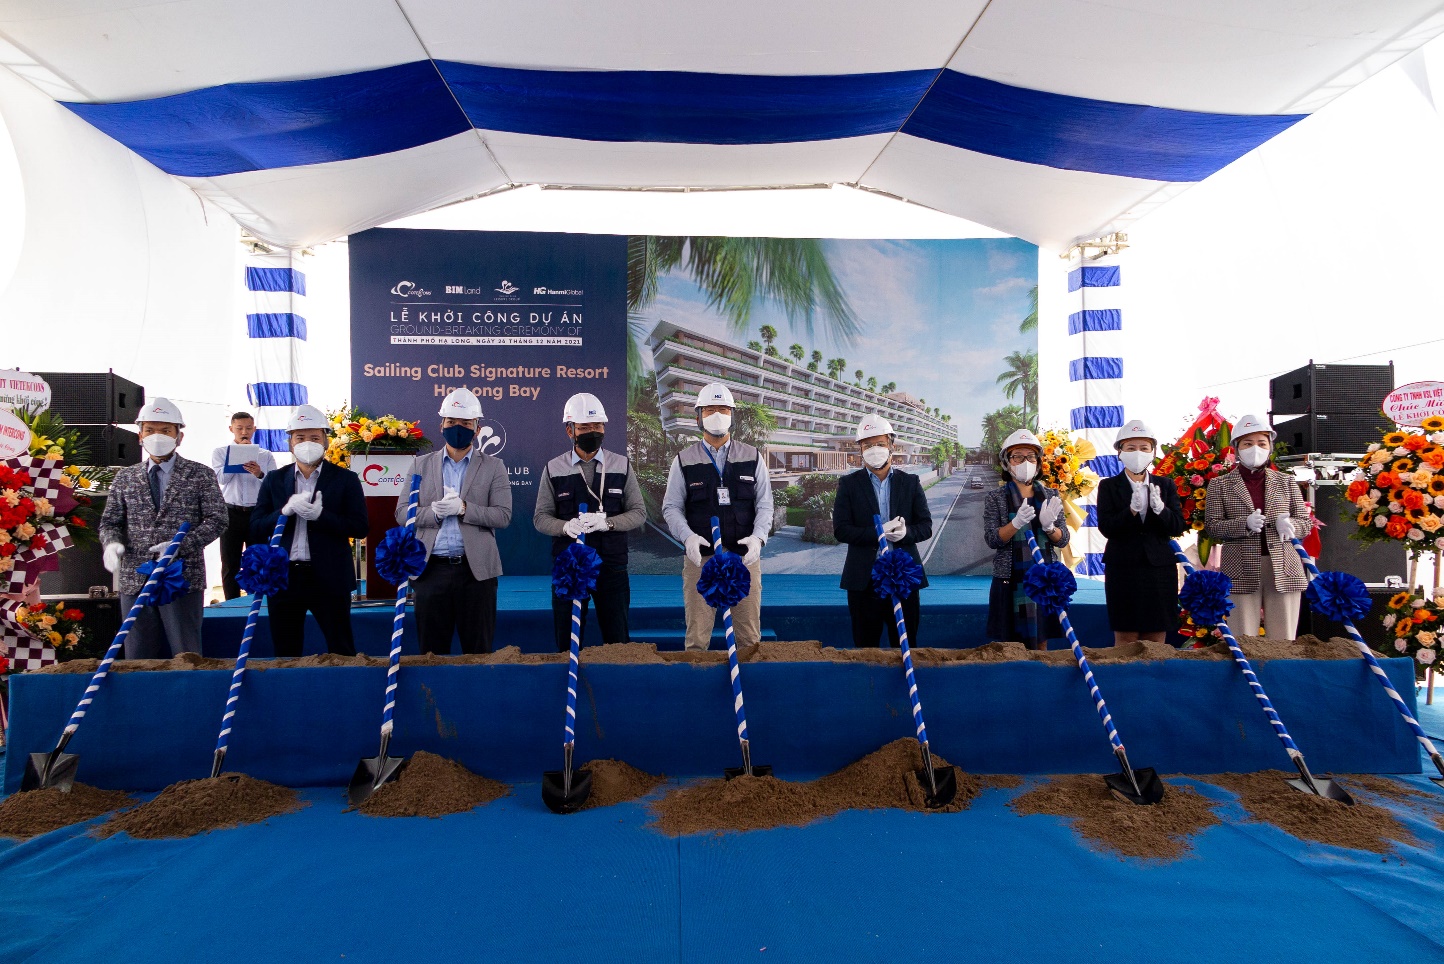 BIM Land công bố đơn vị quản lý dự án cùng tổng thầu và khởi công Sailing Club Signature Resort Ha Long Bay - Ảnh 1.